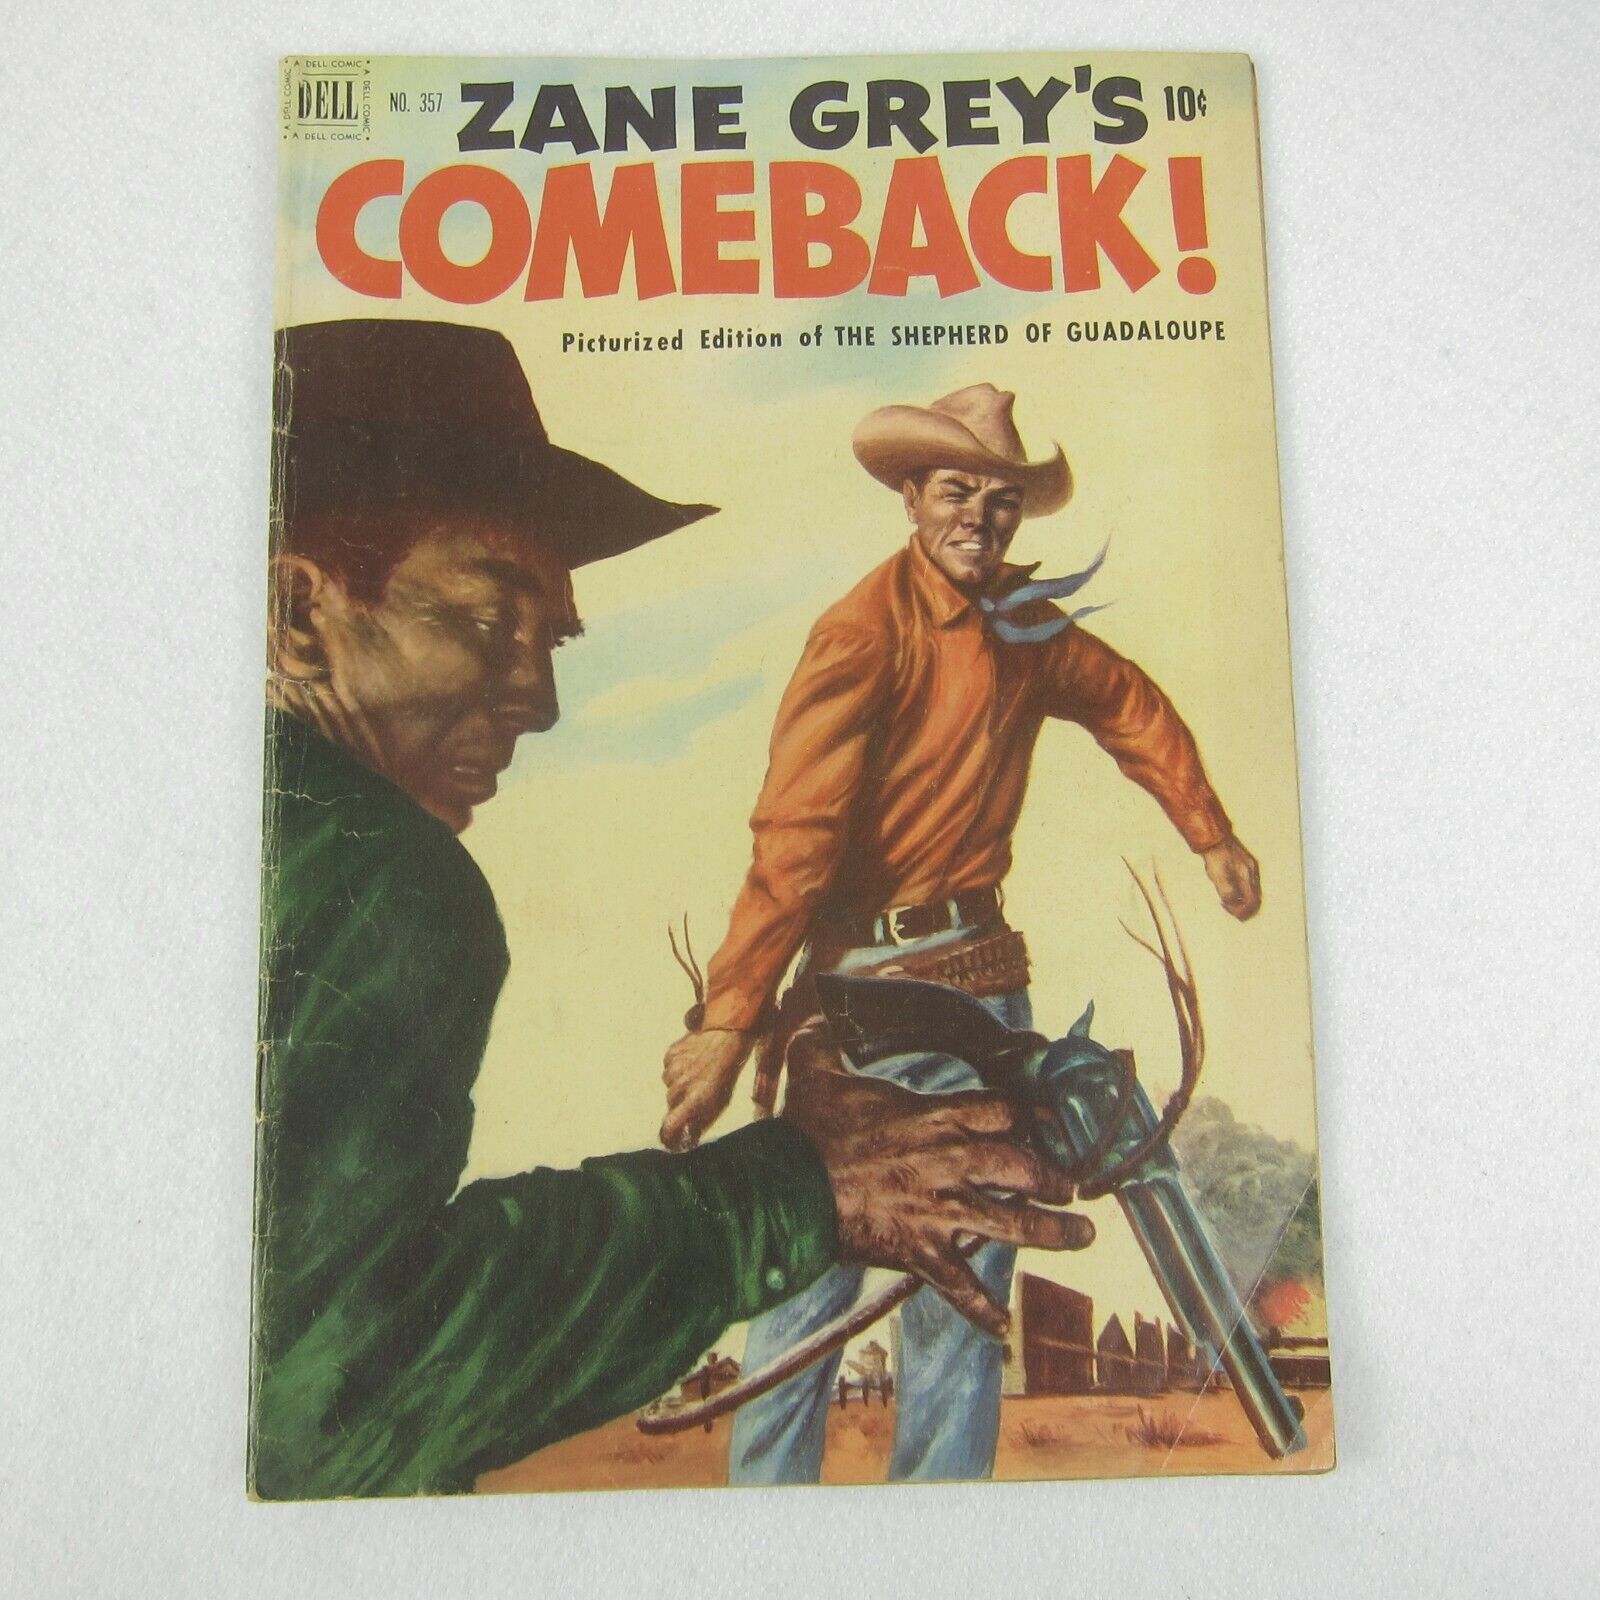 Vintage 1951 Zane Grey's Comeback Comic Book #357 Dell Western Golden Age RARE - $59.99